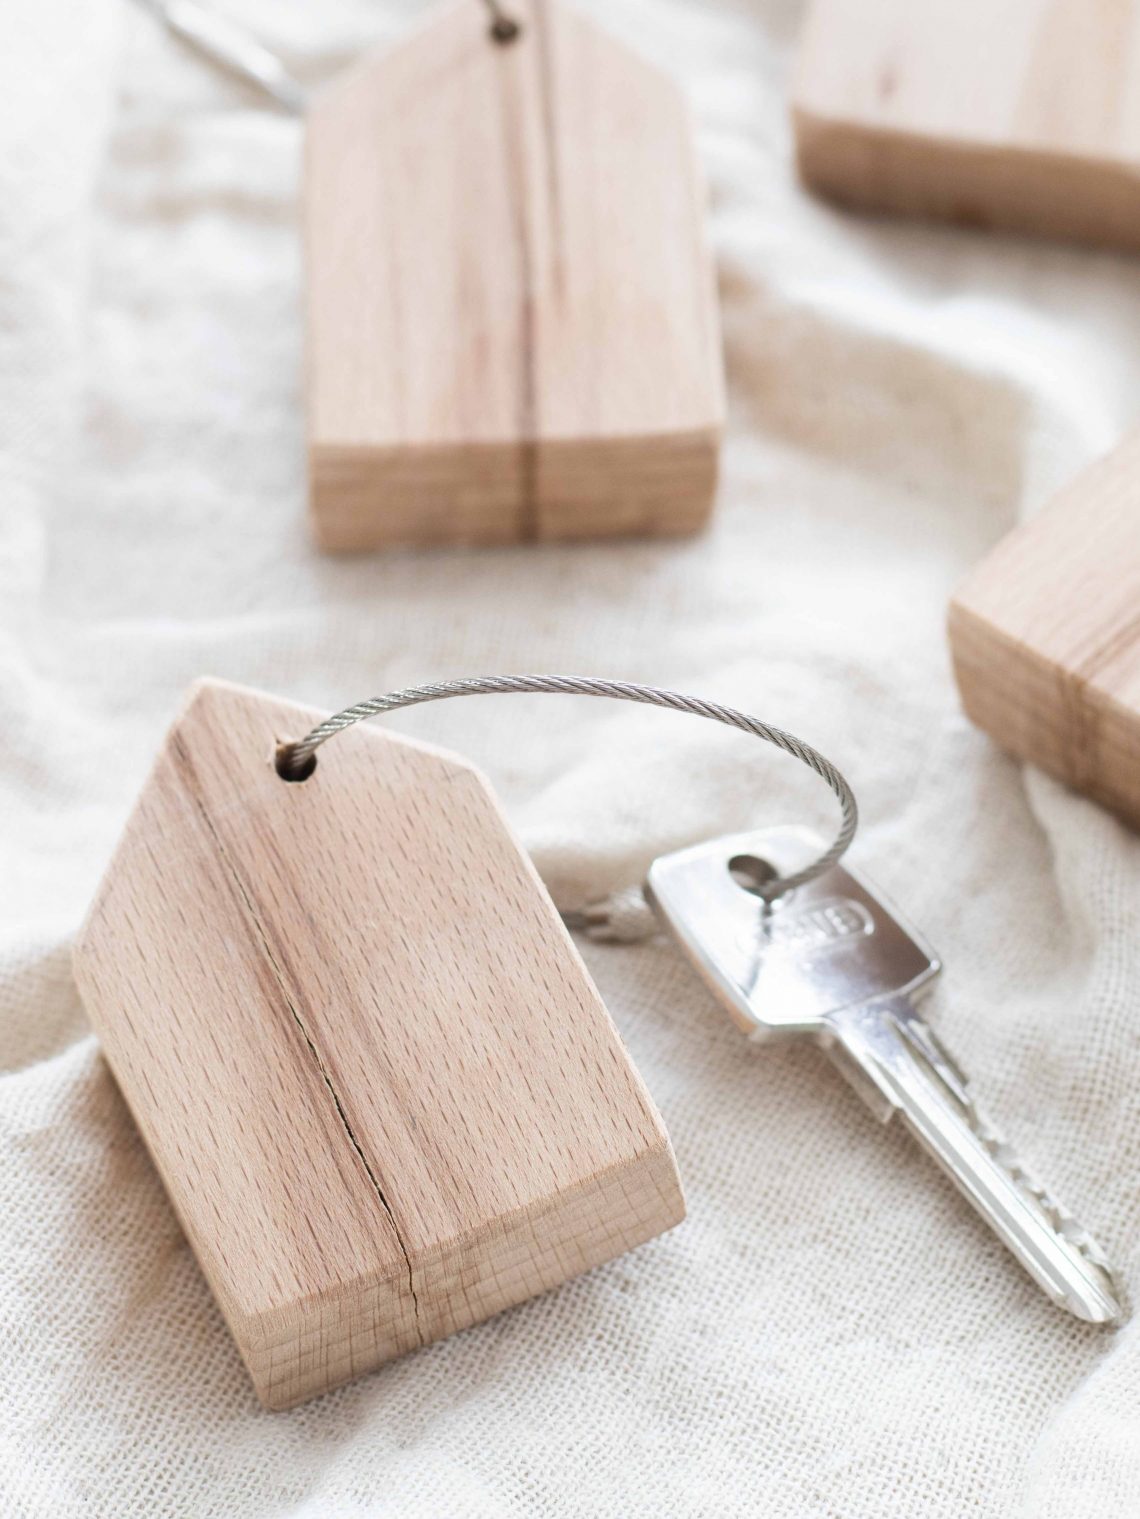 Anleitung für einen Schlüsselanhänger aus Holz